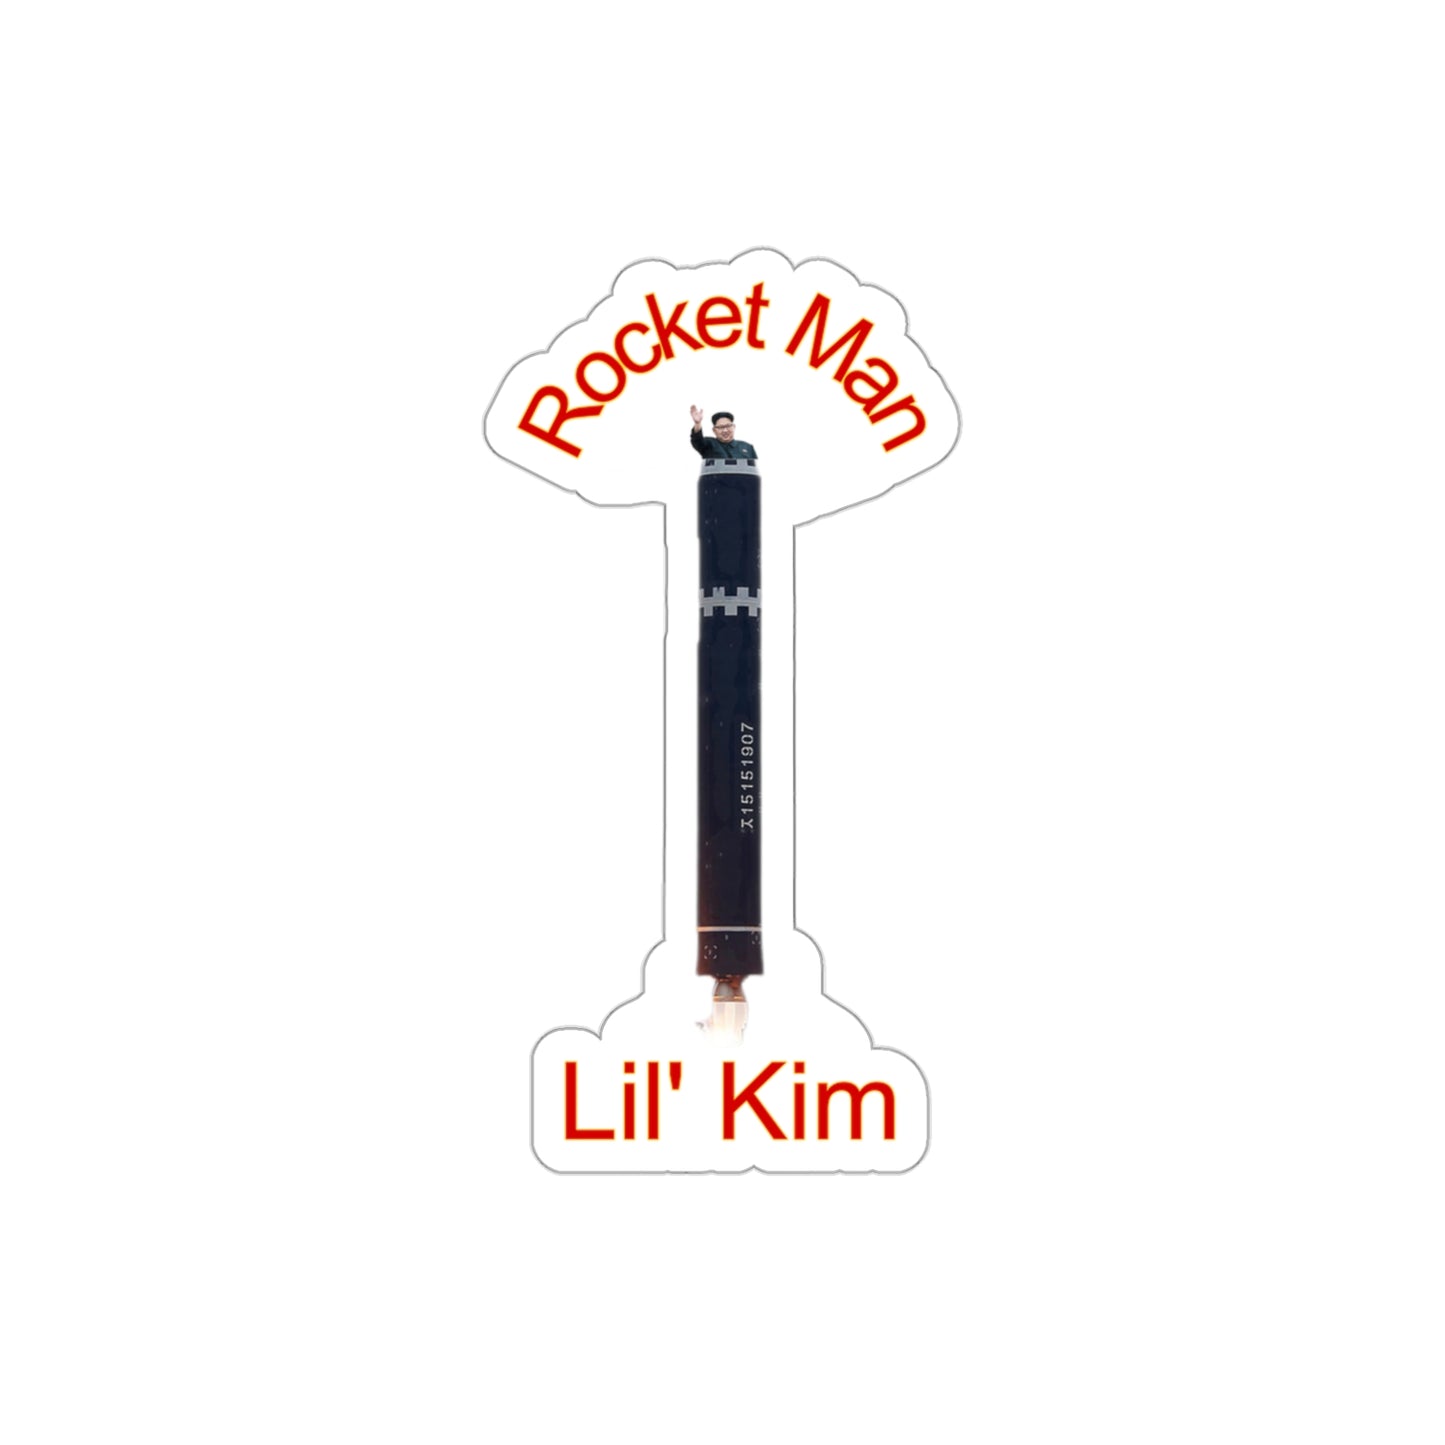 Rocket man, Lil' Kim